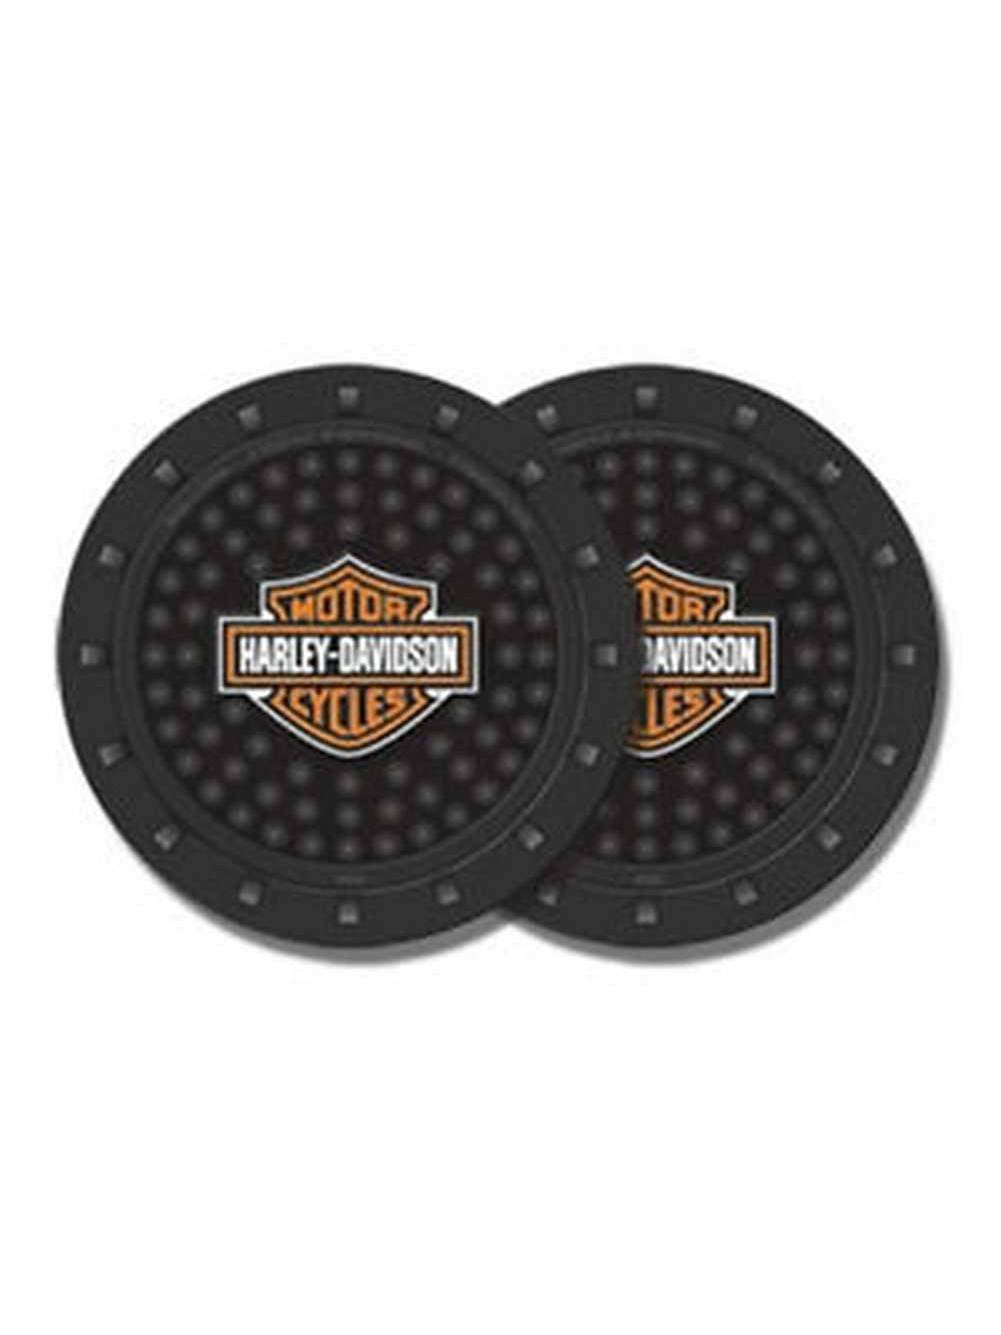 Harley-Davidson Bar & Shield Car Drink Holder Coaster, Set Of 2